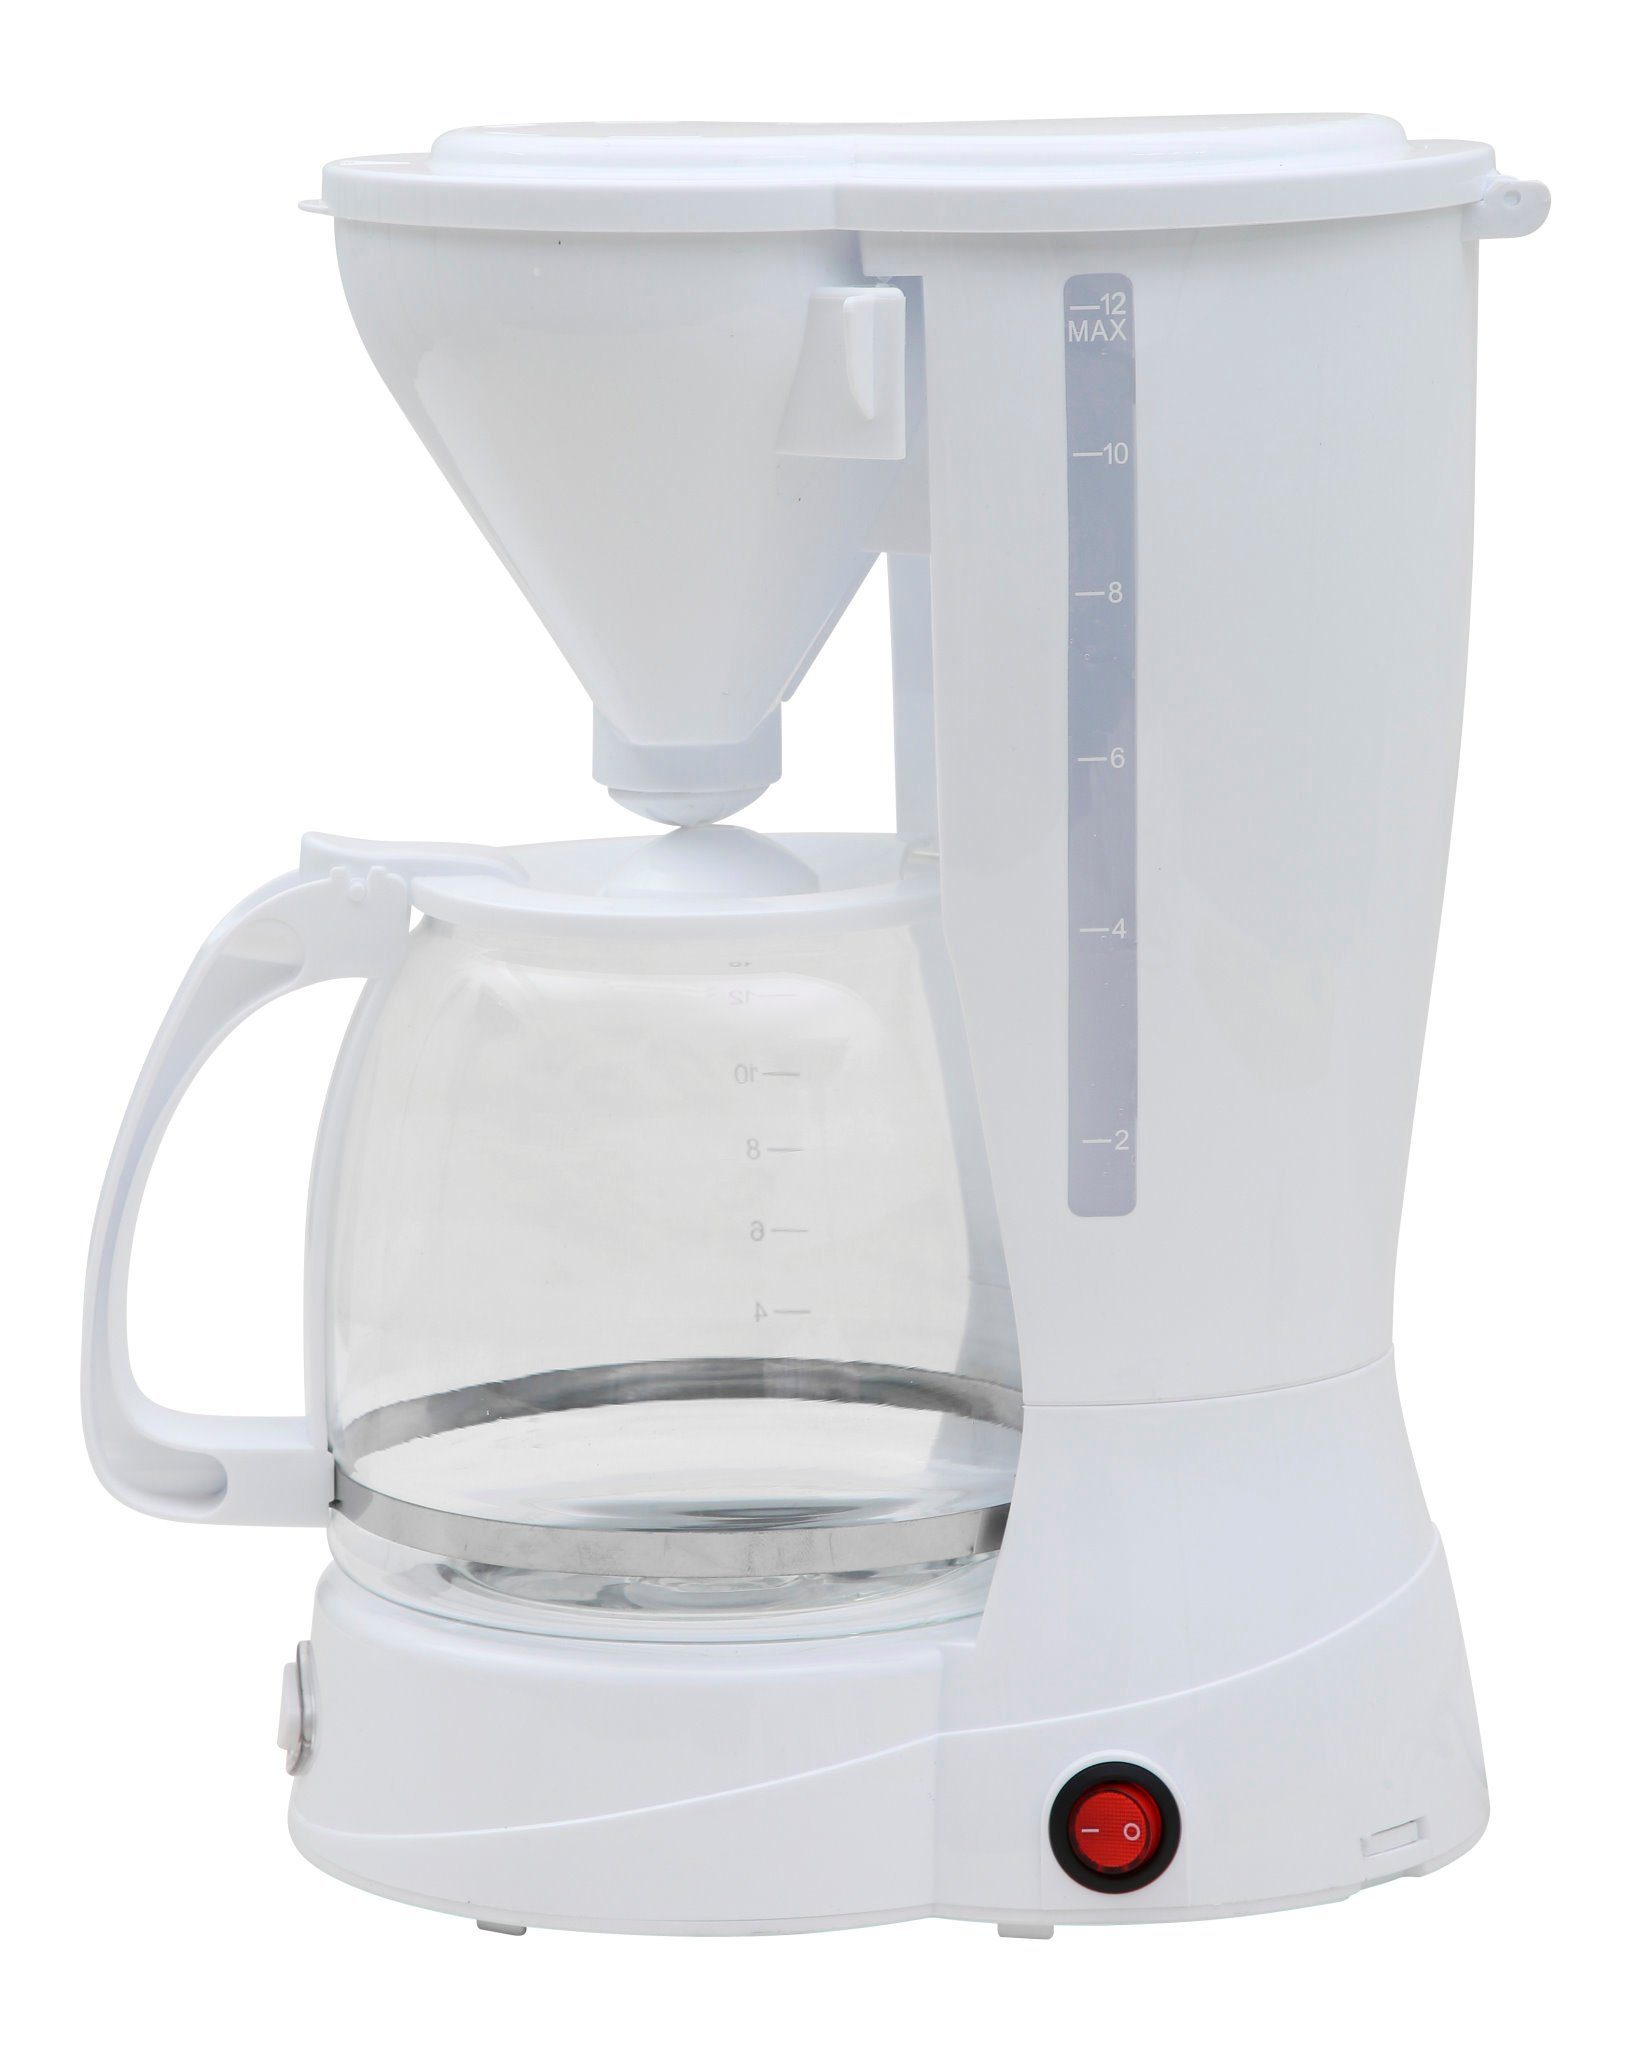 DESKI Filterkaffeemaschine, 1.5l Kaffeekanne, Dauerfilter oder Papierfilter 2, Kaffeemaschine 12 Tassen Filterkaffeemaschine Glas Kanne Kaffee Maschine 800W Weiss